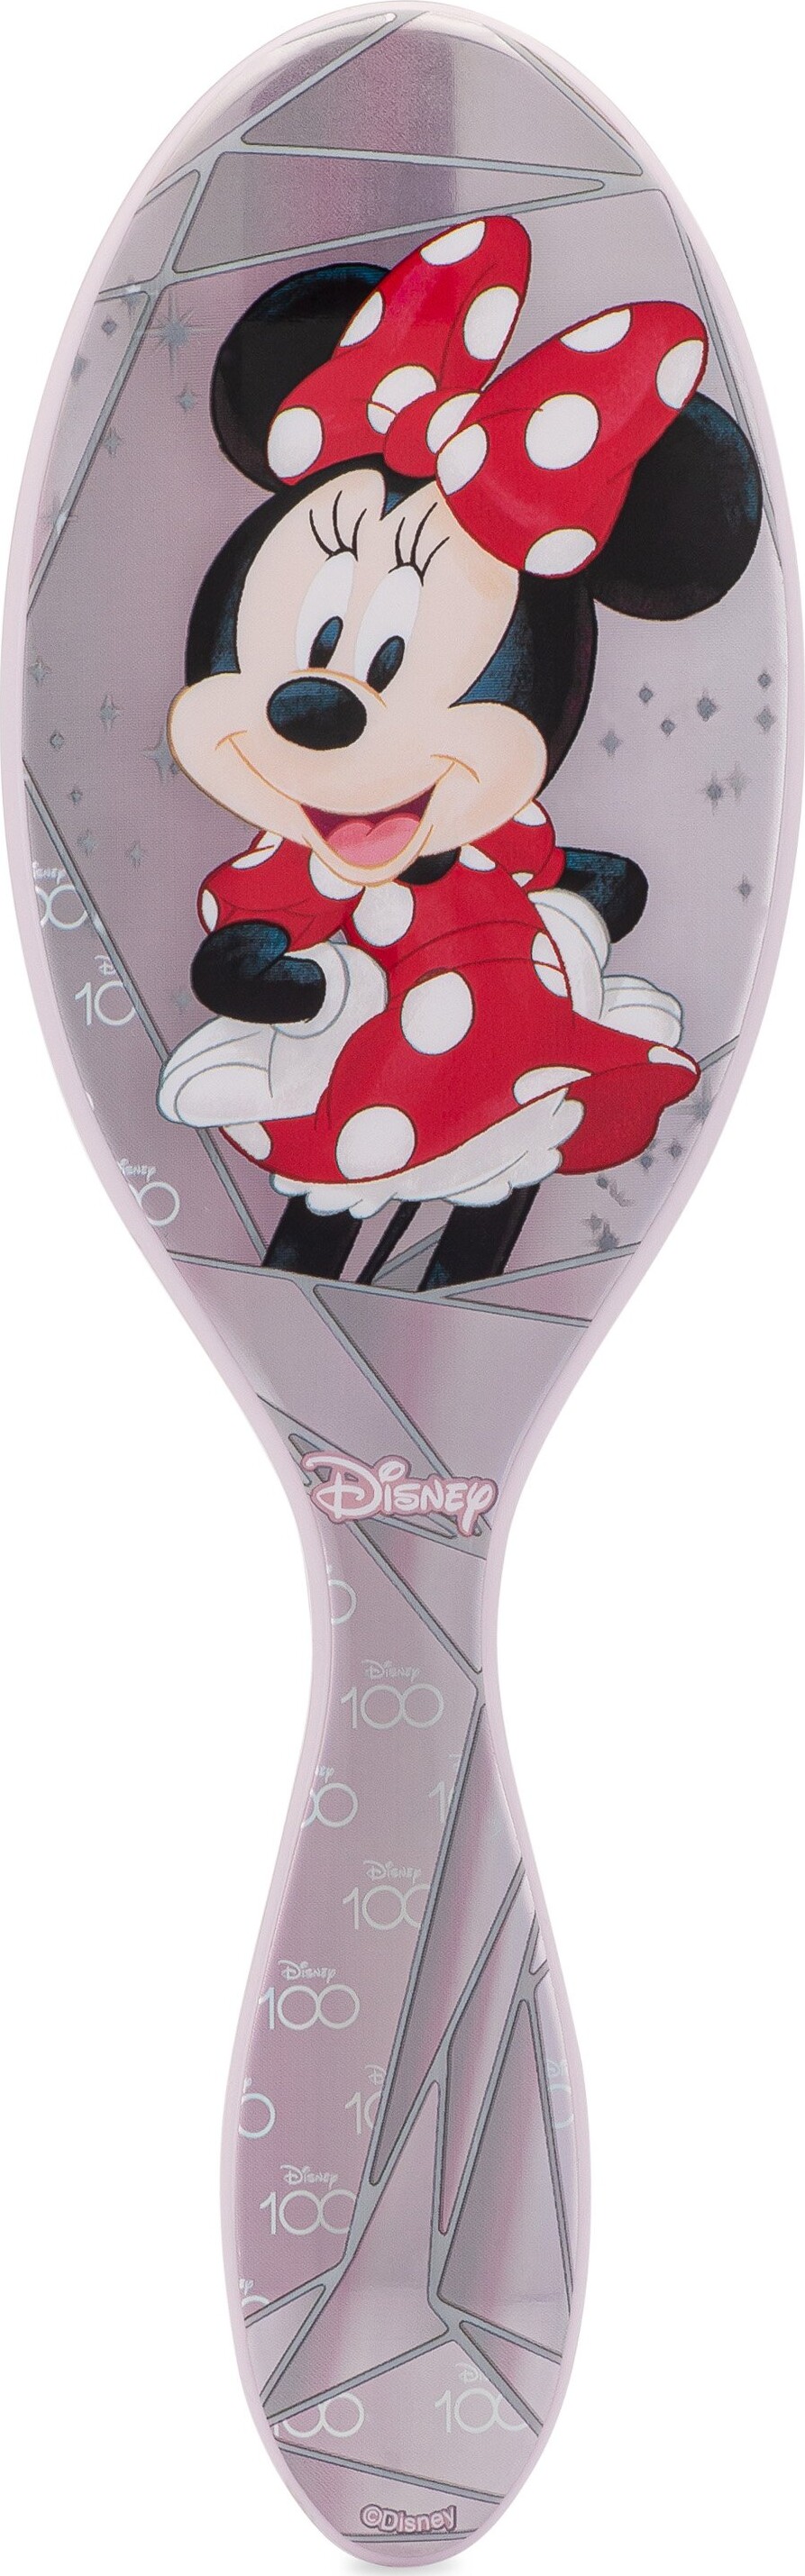 Billede af Wet Brush - Original Disney 100 Detangler Minnie Mouse